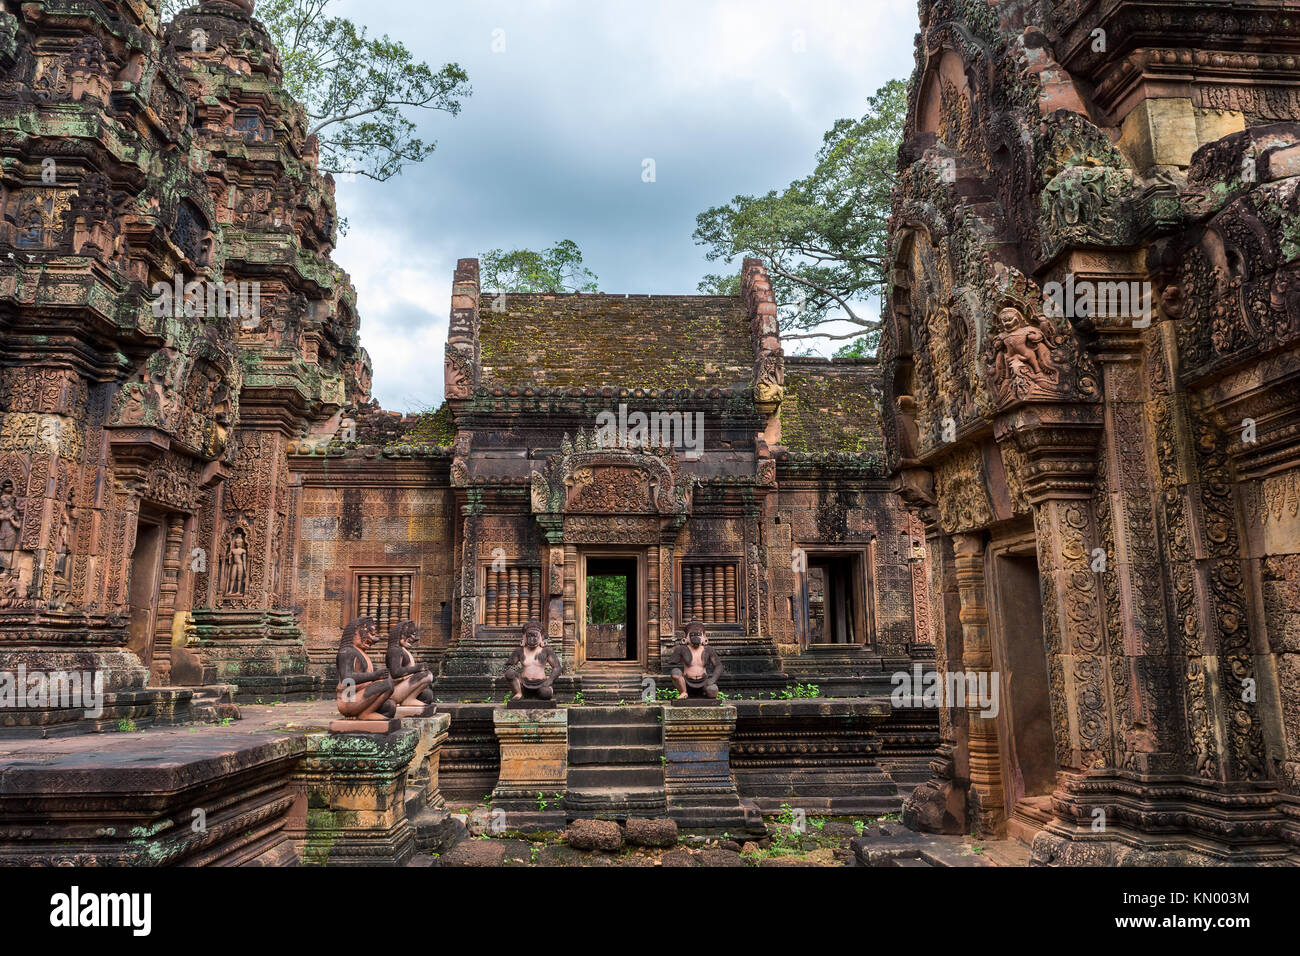 Una vista di Banteay Srei temple, famosa per le sue sculture a parete, situato nei pressi di Siem Reap, Cambogia. Foto Stock